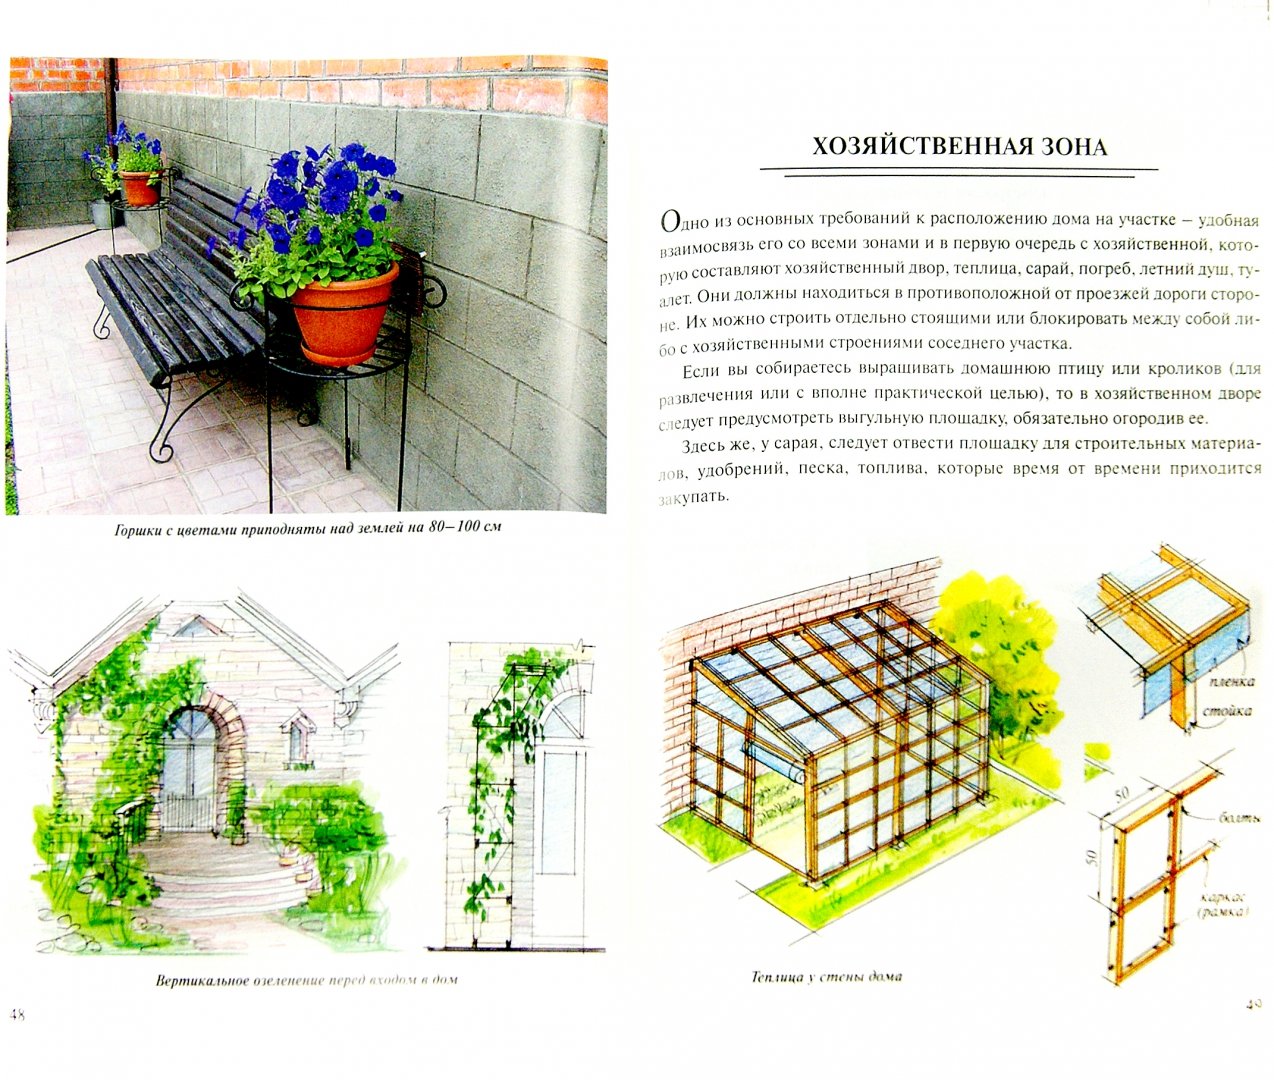 Иллюстрация 1 из 37 для Планировка и обустройство садового участка - Страшнов, Страшнова | Лабиринт - книги. Источник: Лабиринт